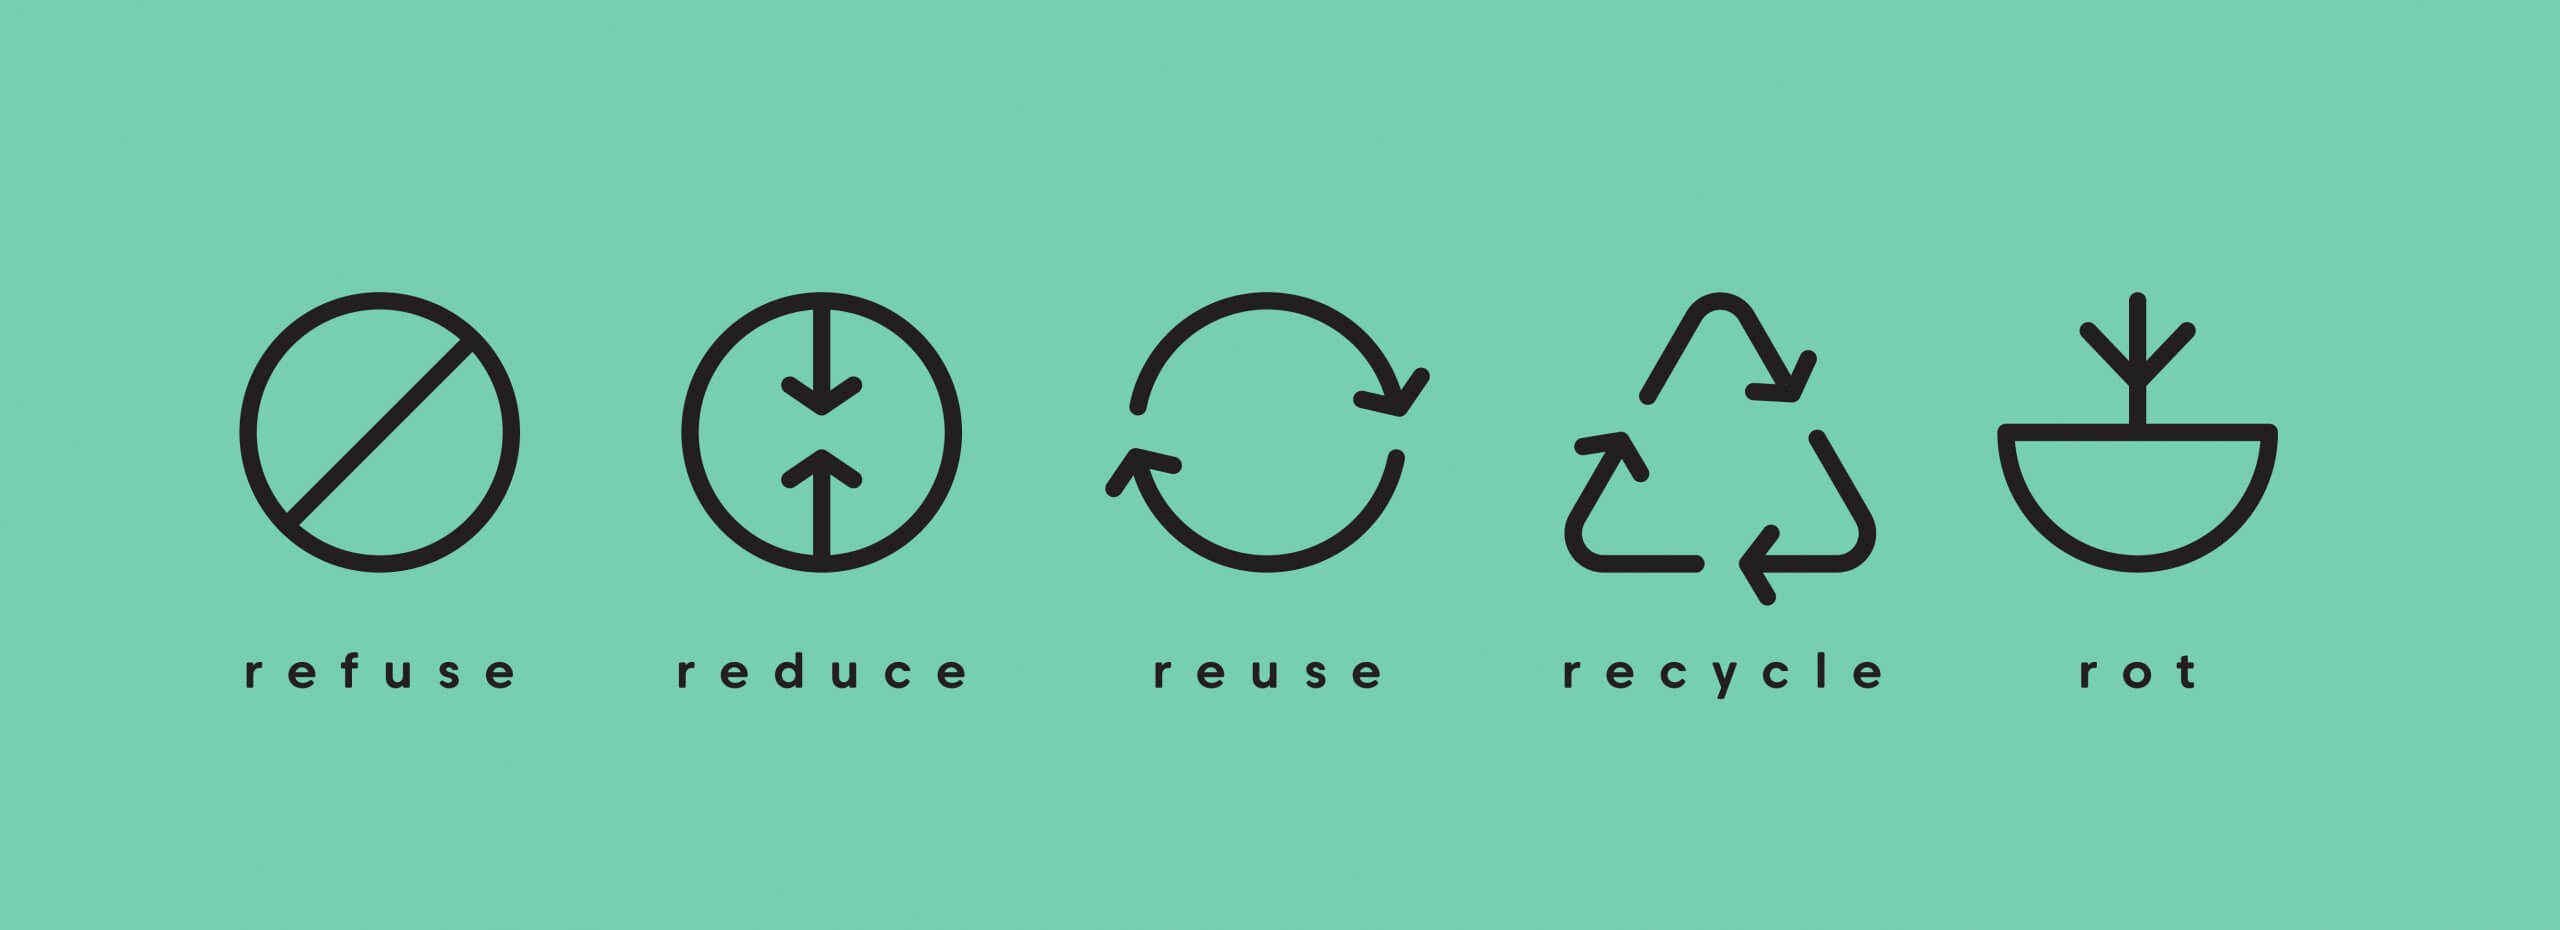 Ambiciozan cilj od 70 % odvojenog prikupljanja otpada te provođenje aktivnosti smanjenja, ponovne uporabe, recikliranja i kompostiranja